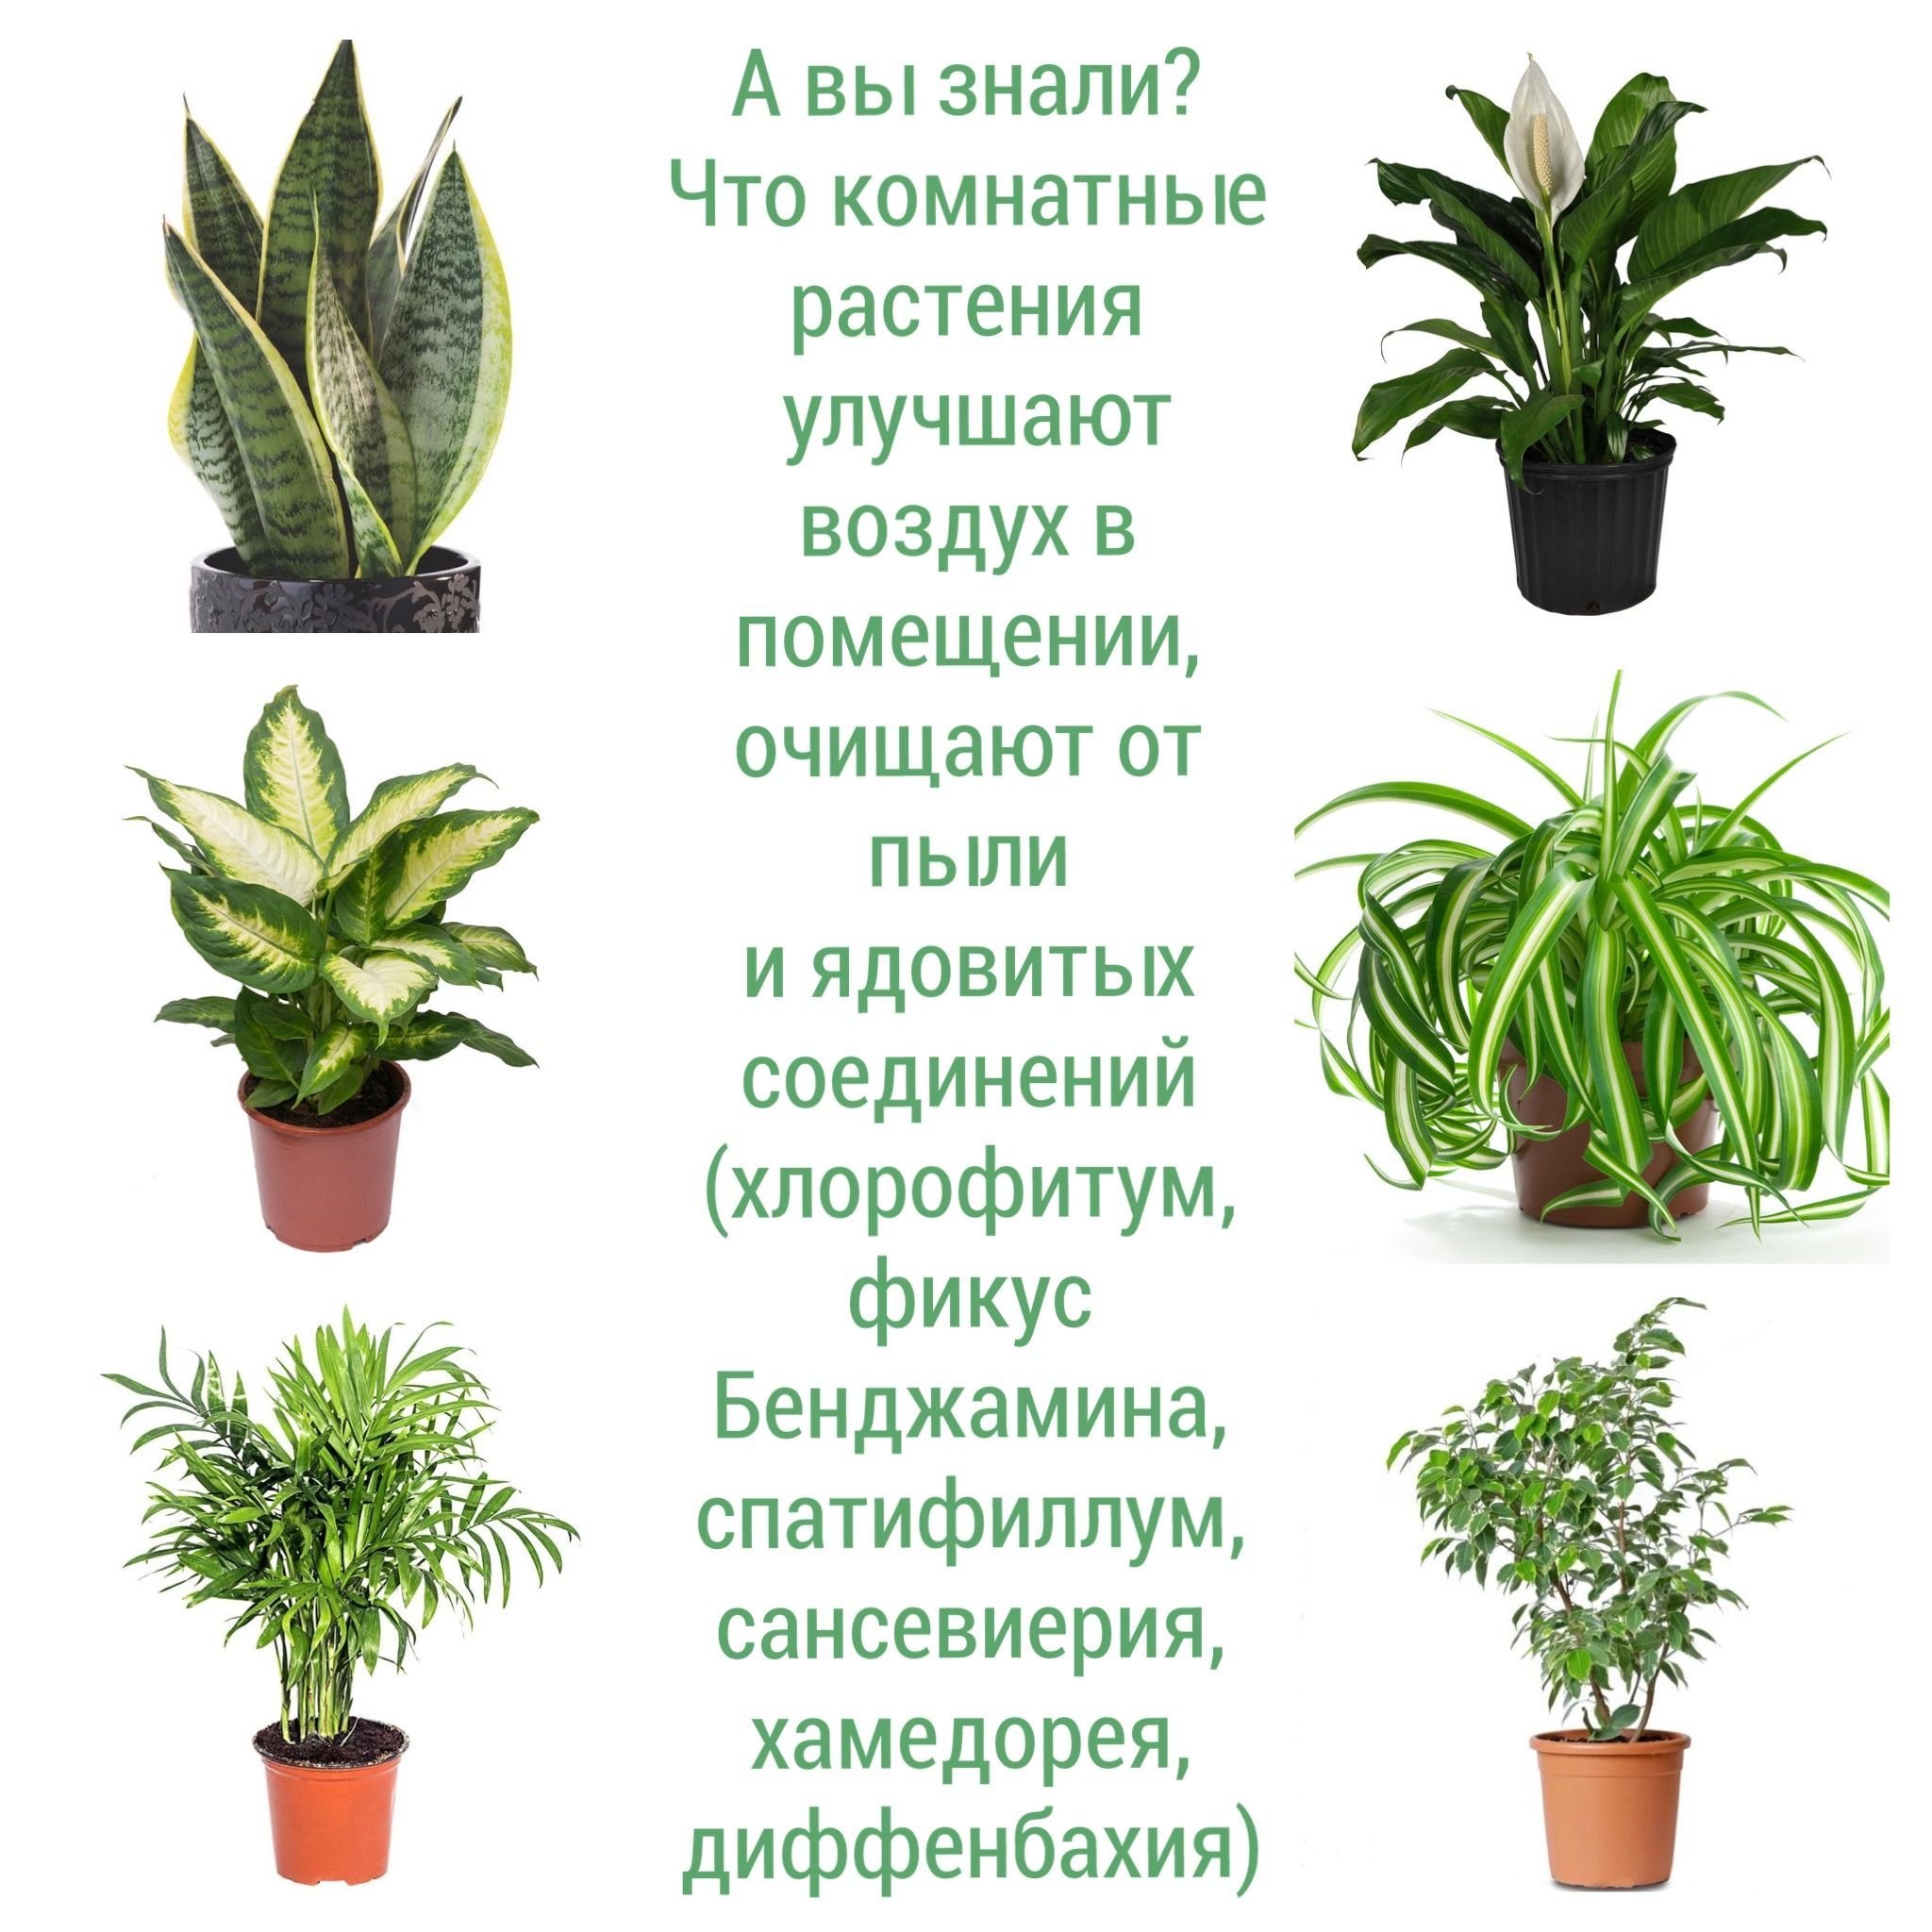 Комнатные растения фикус хлорофитум. Ядовитые комнатные растения. Ядовитые растения домашние комнатные. Комнатные растения на г